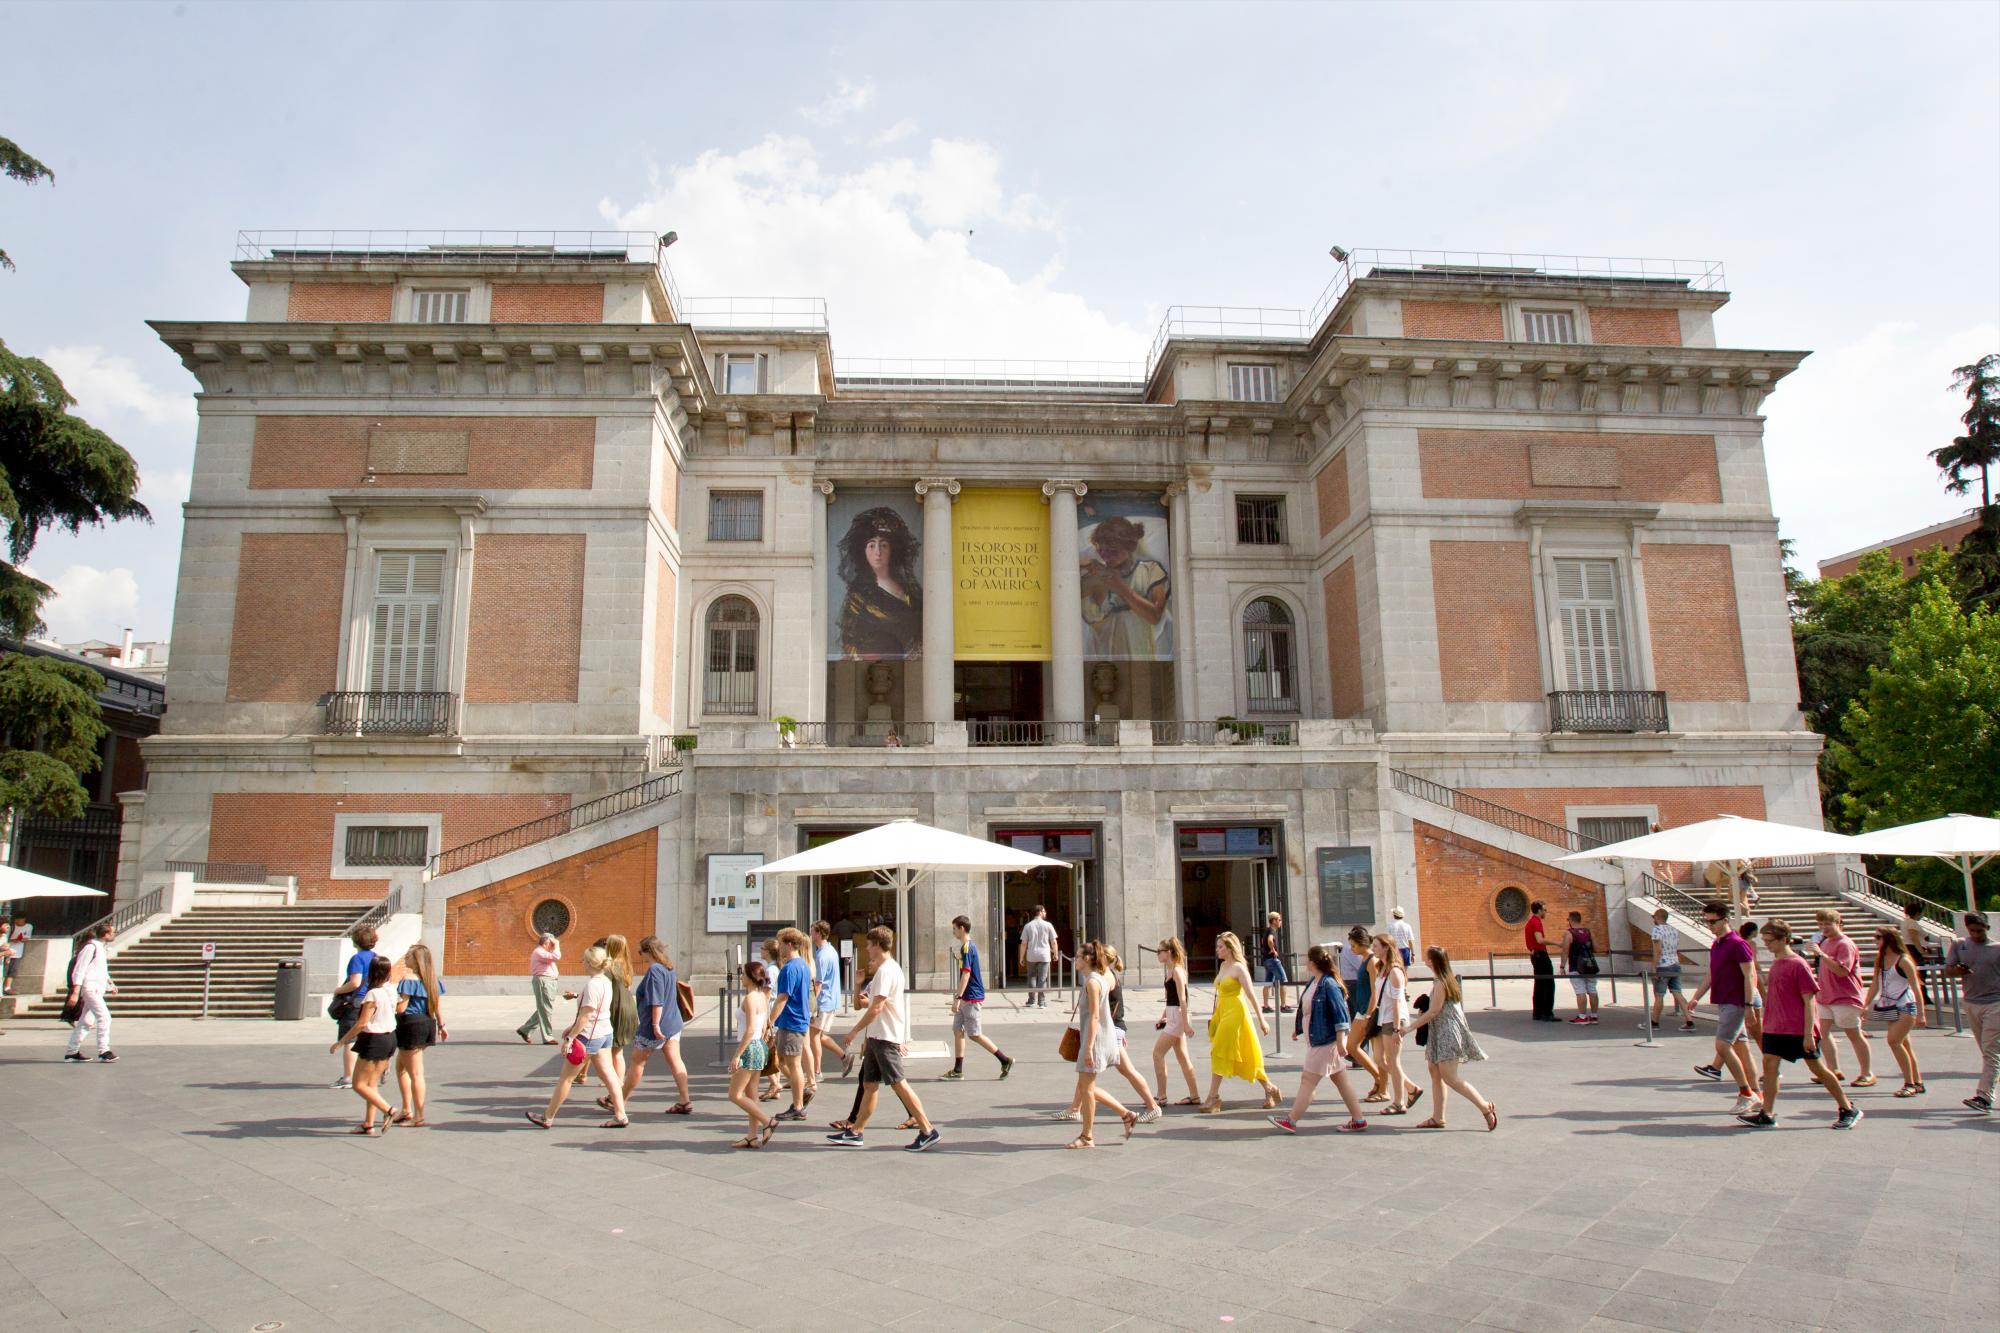 PASEO DEL ARTE: Tres museos de fama mundial que reúnen más de 36.000 obras y que en el último año fueron visitados por más de siete millones de turistas. Es el Paseo del Arte de Madrid, delimitado por el triángulo museístico de El Prado, el Reina Sofía y El Thyssen - Bornemisza.